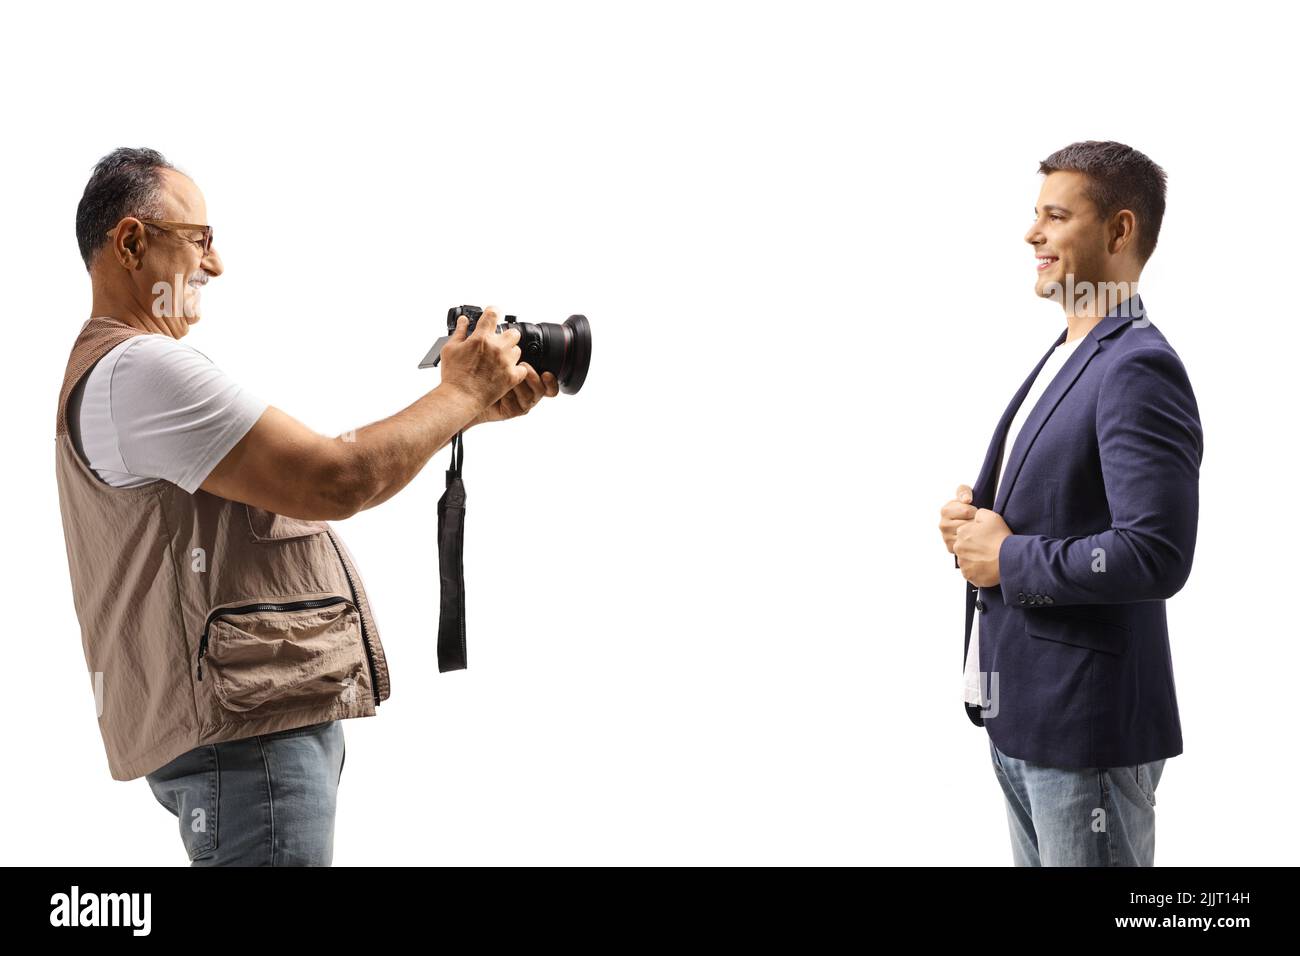 Reifer Mann, der ein Foto eines jungen Mannes mit einer professionellen Kamera auf weißem Hintergrund fotografiert Stockfoto